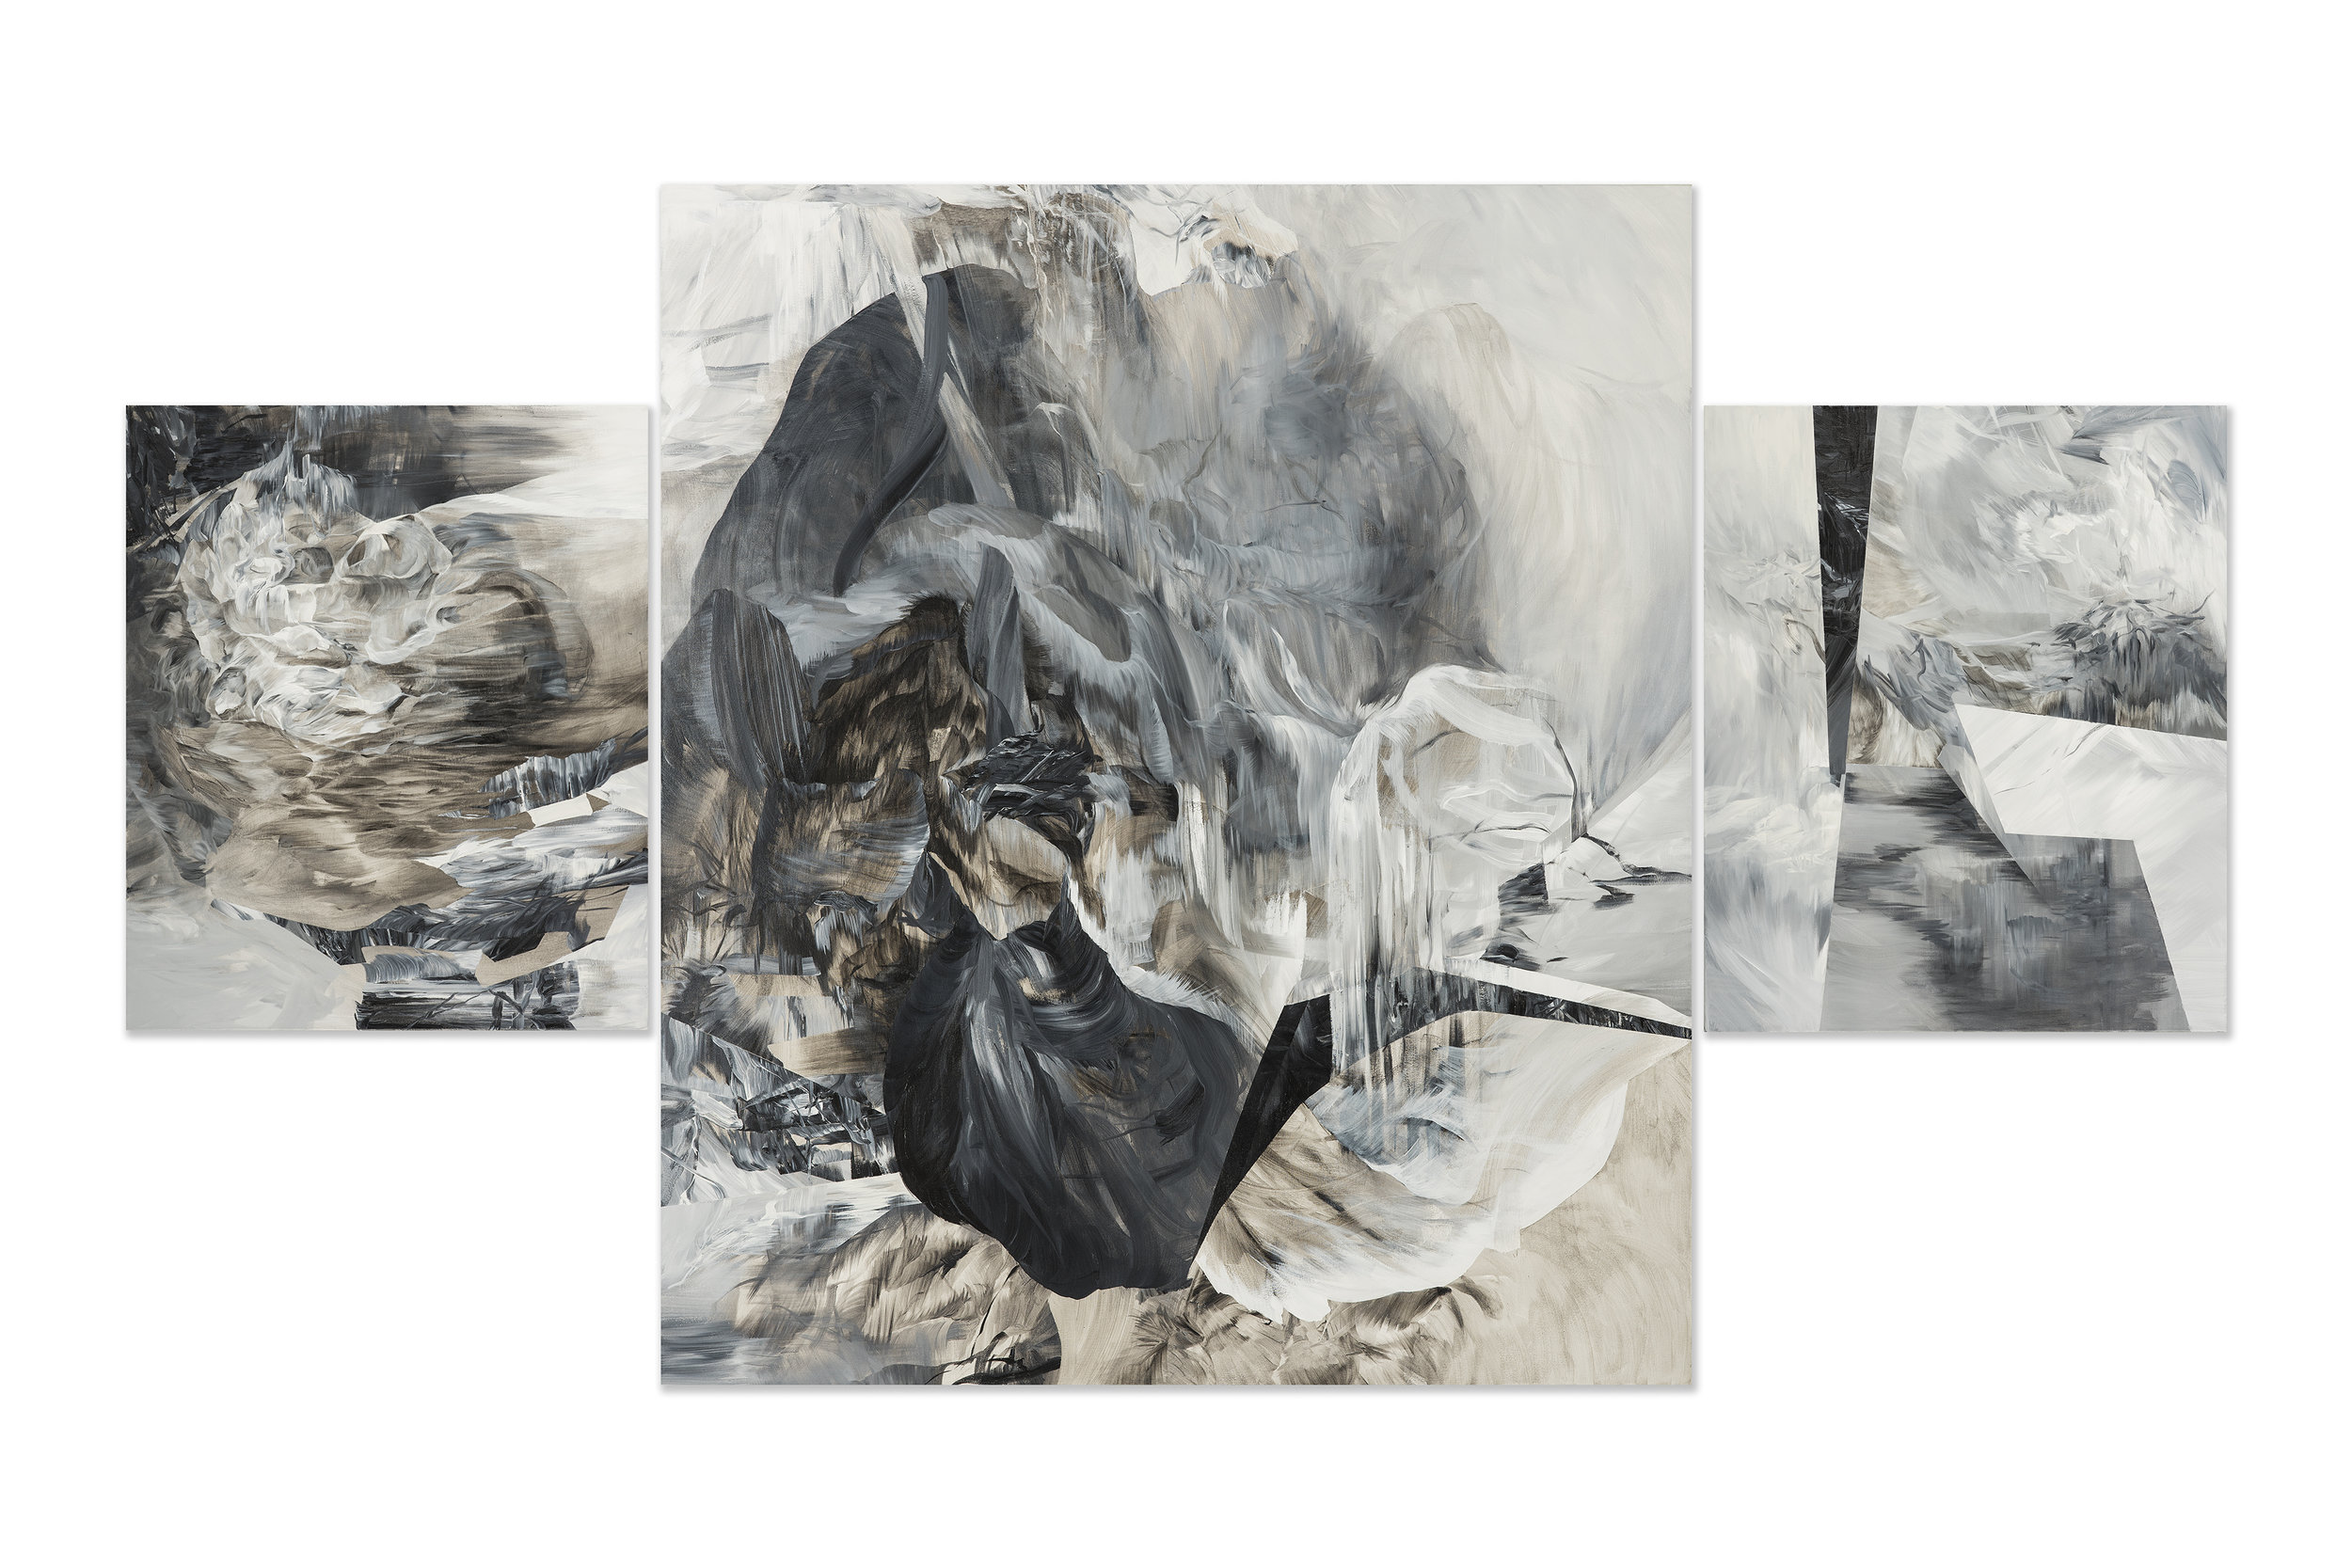   Altar - Triptych , 2014  acrylic on canvas  84" x 144" 